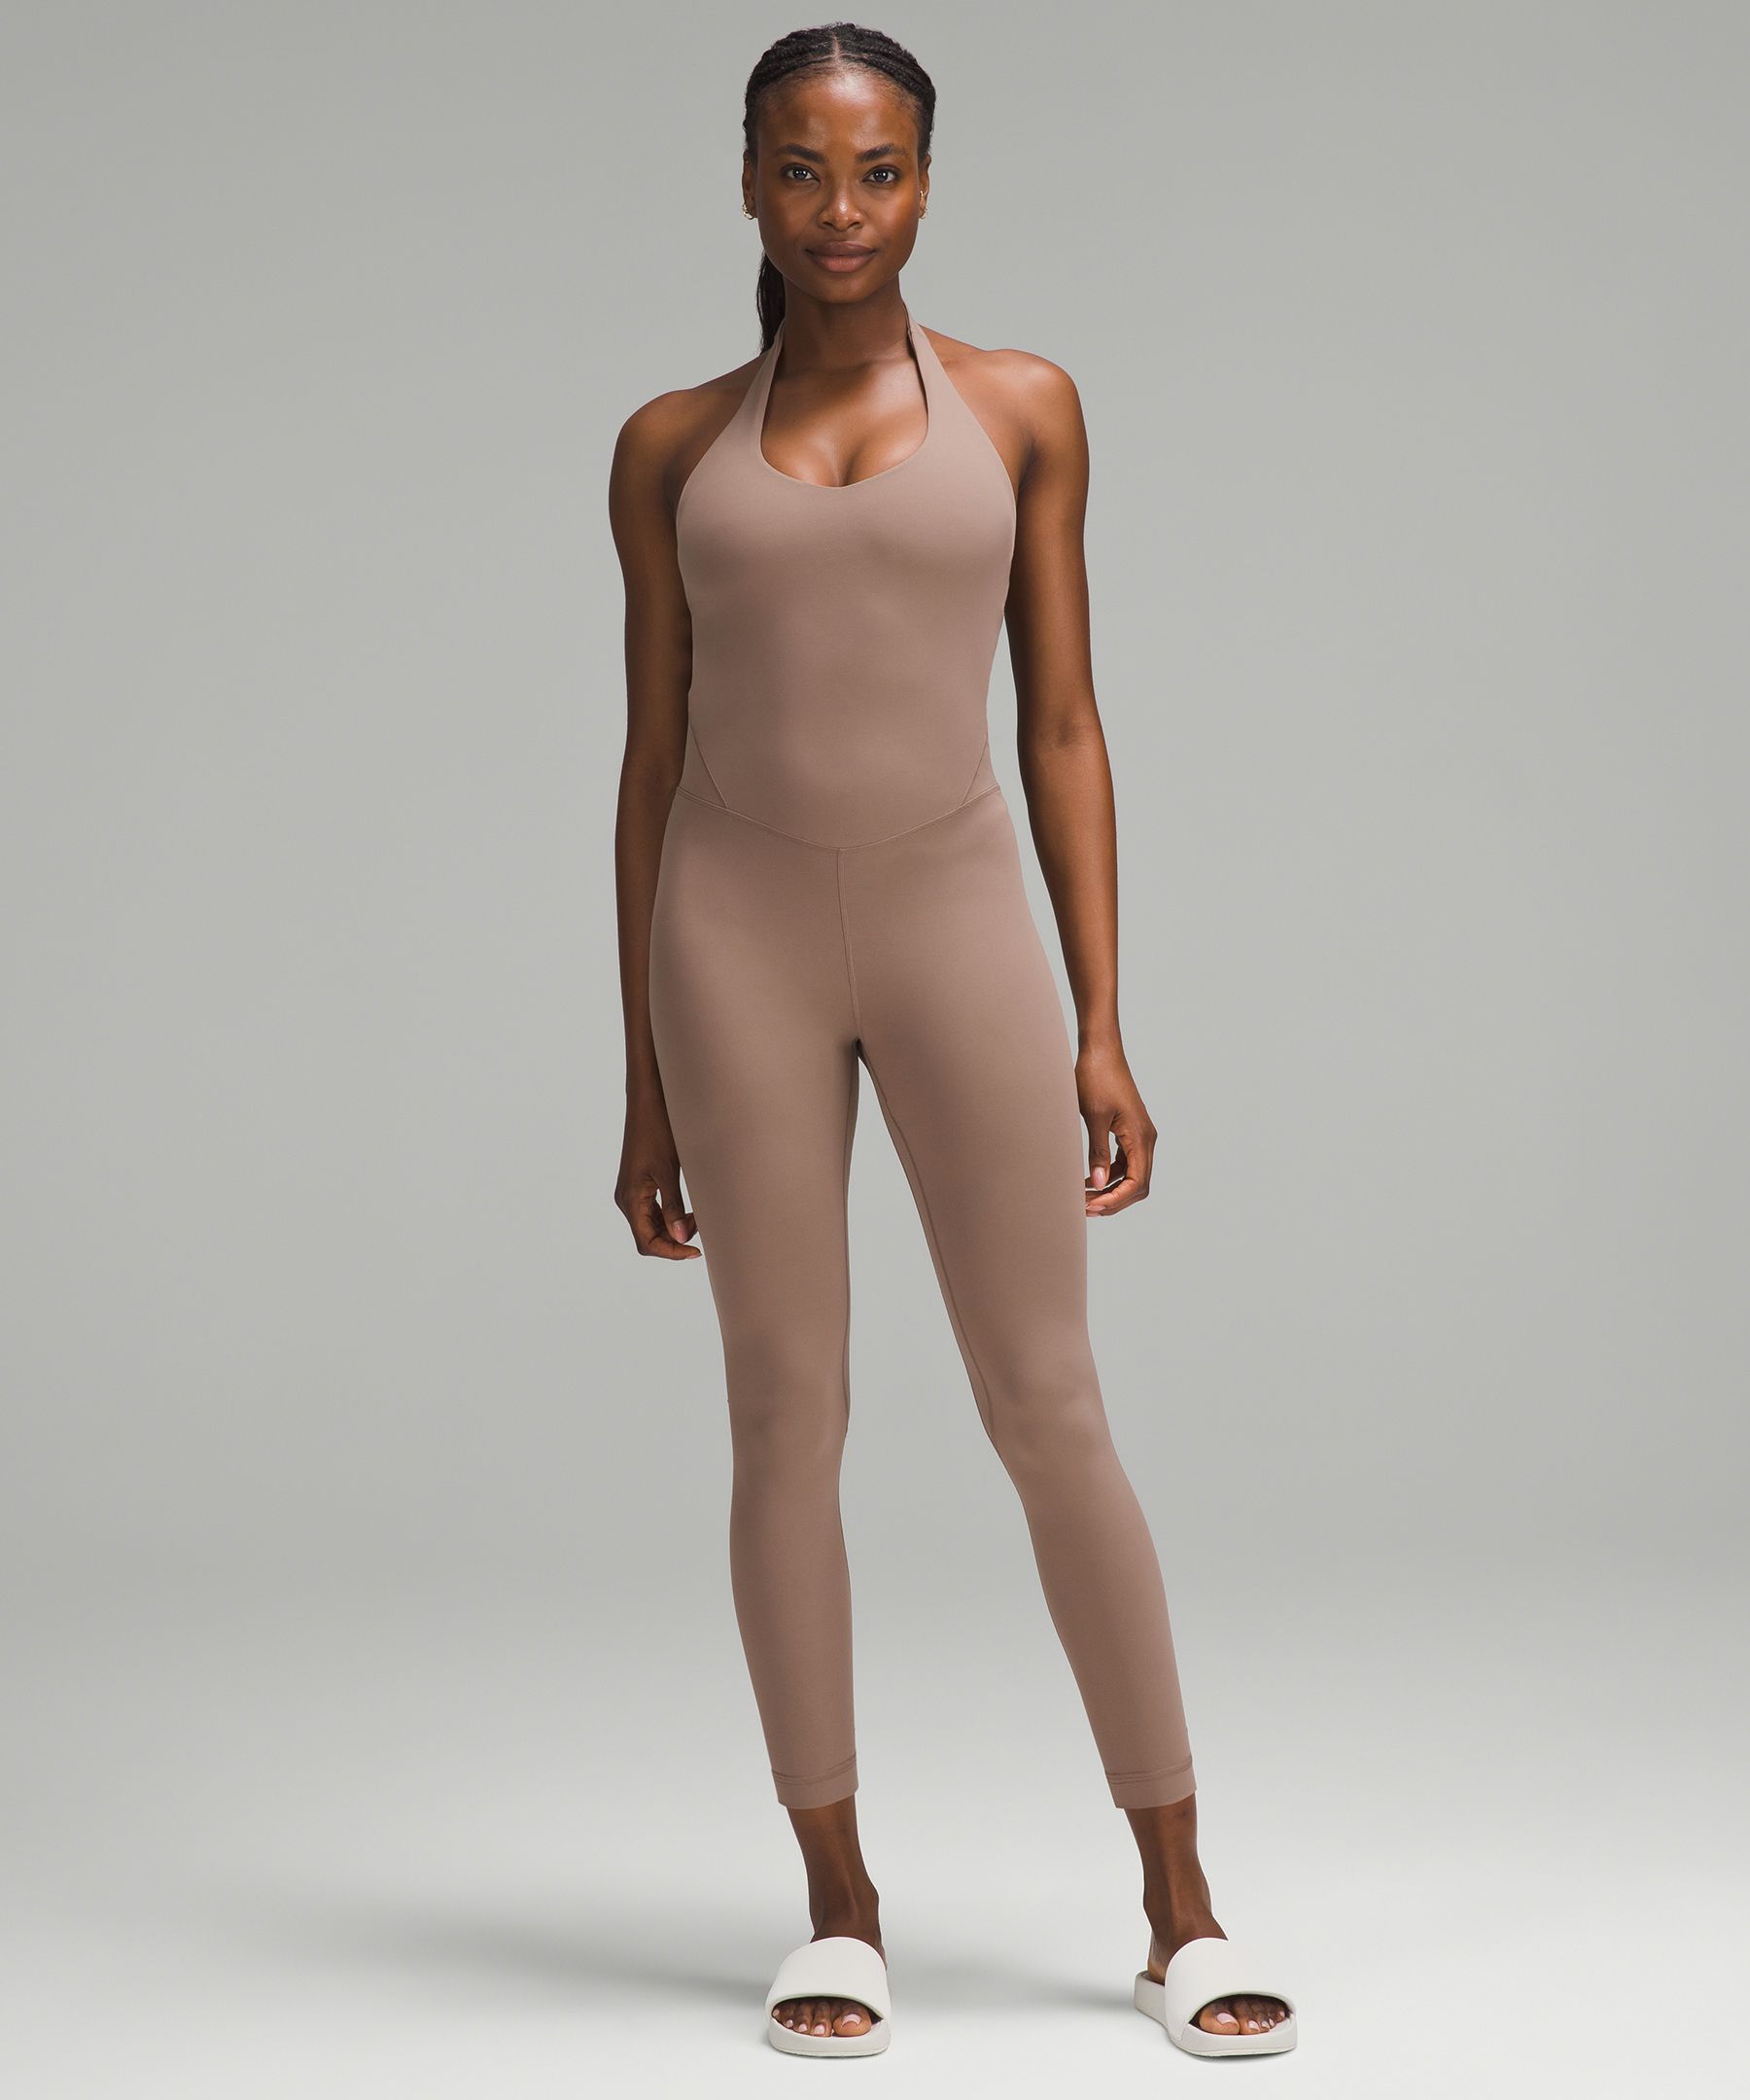 Lululemon Align™ Bodysuit 8, Women's Dresses